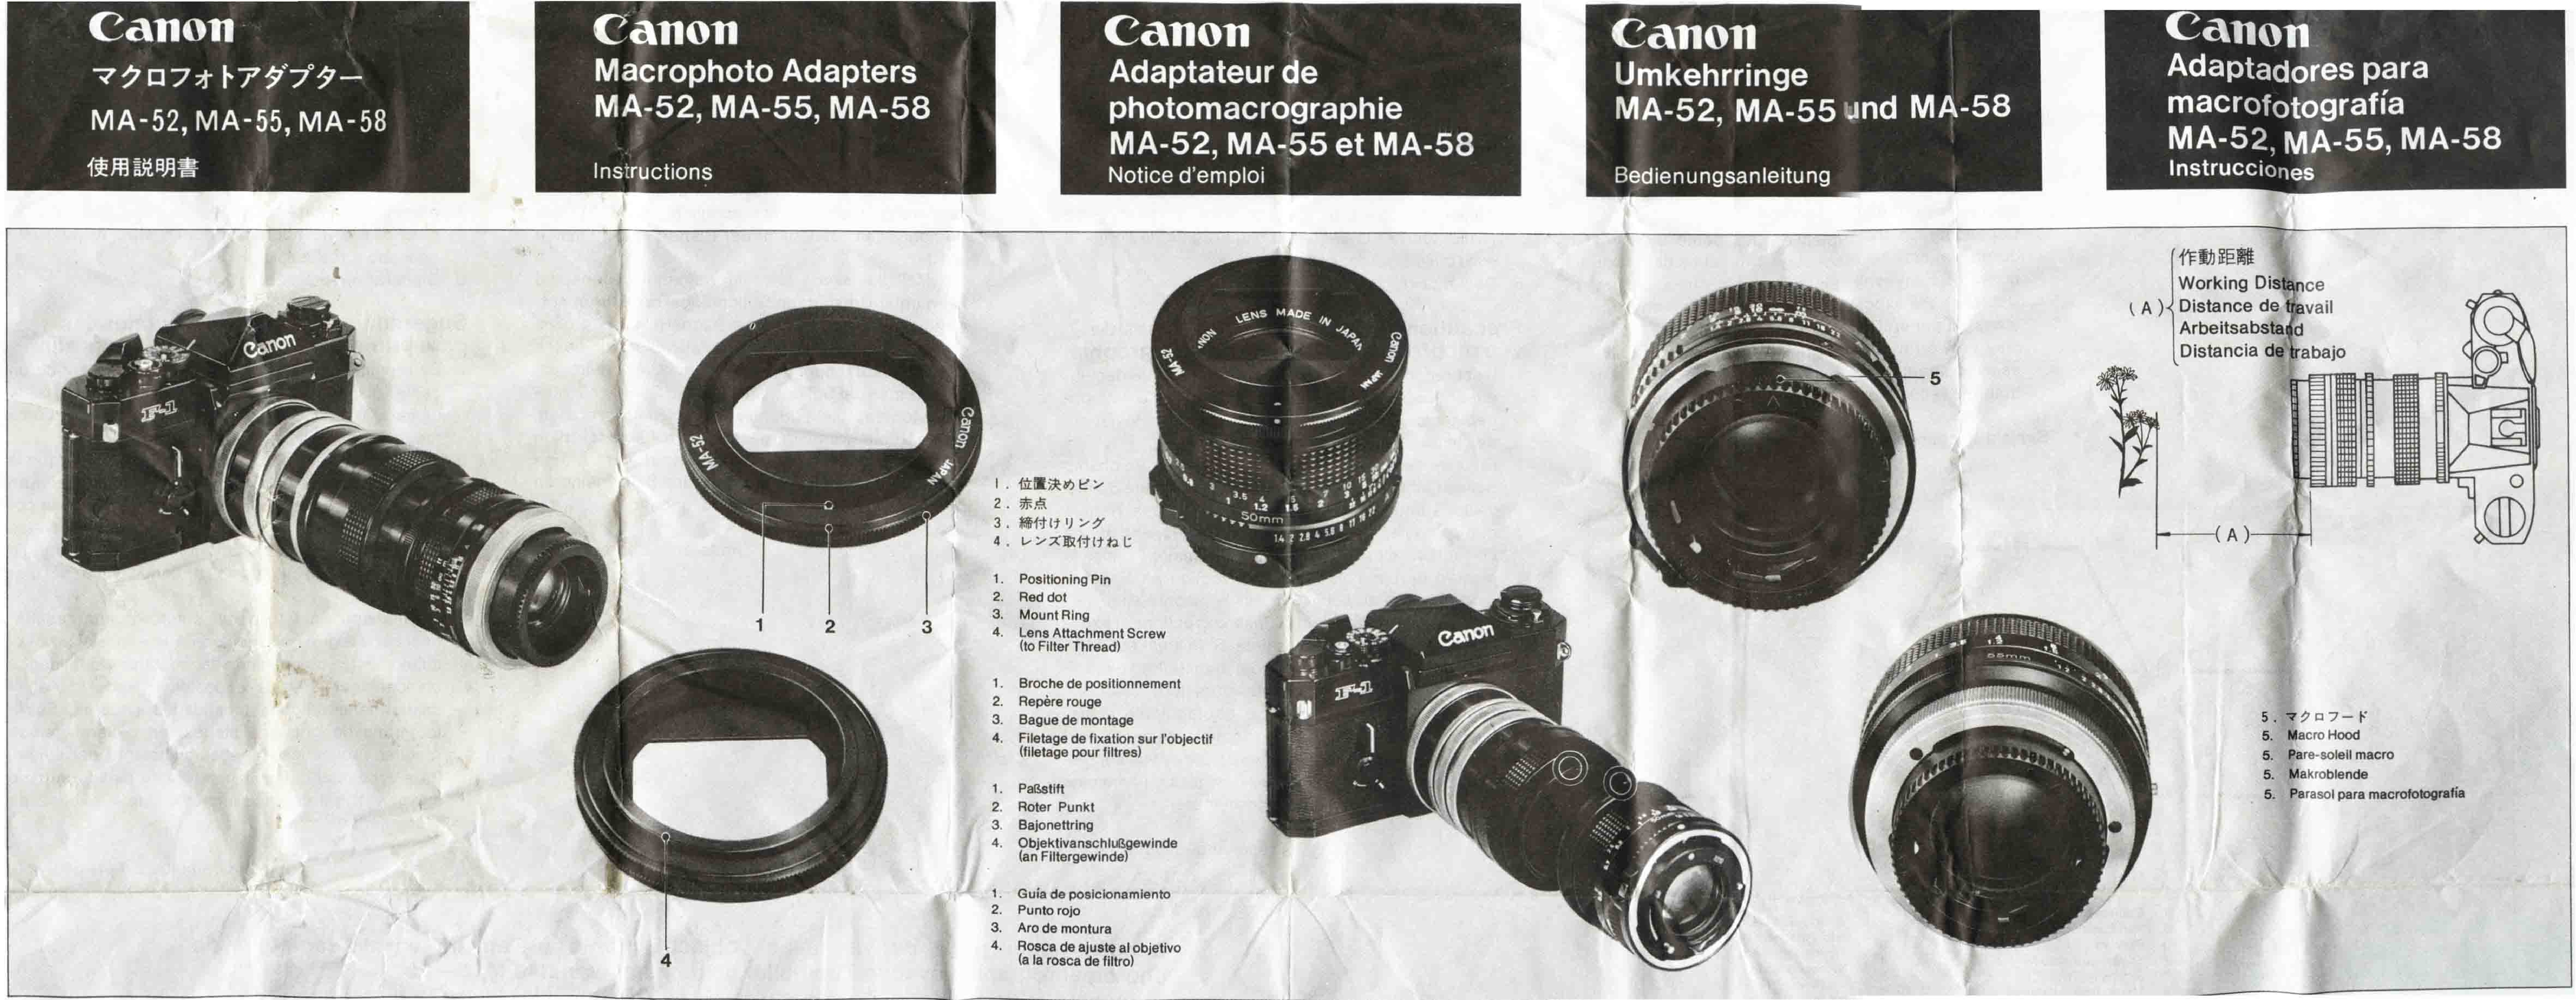 Canon MA-58, MA-55, MA-52 User Manual